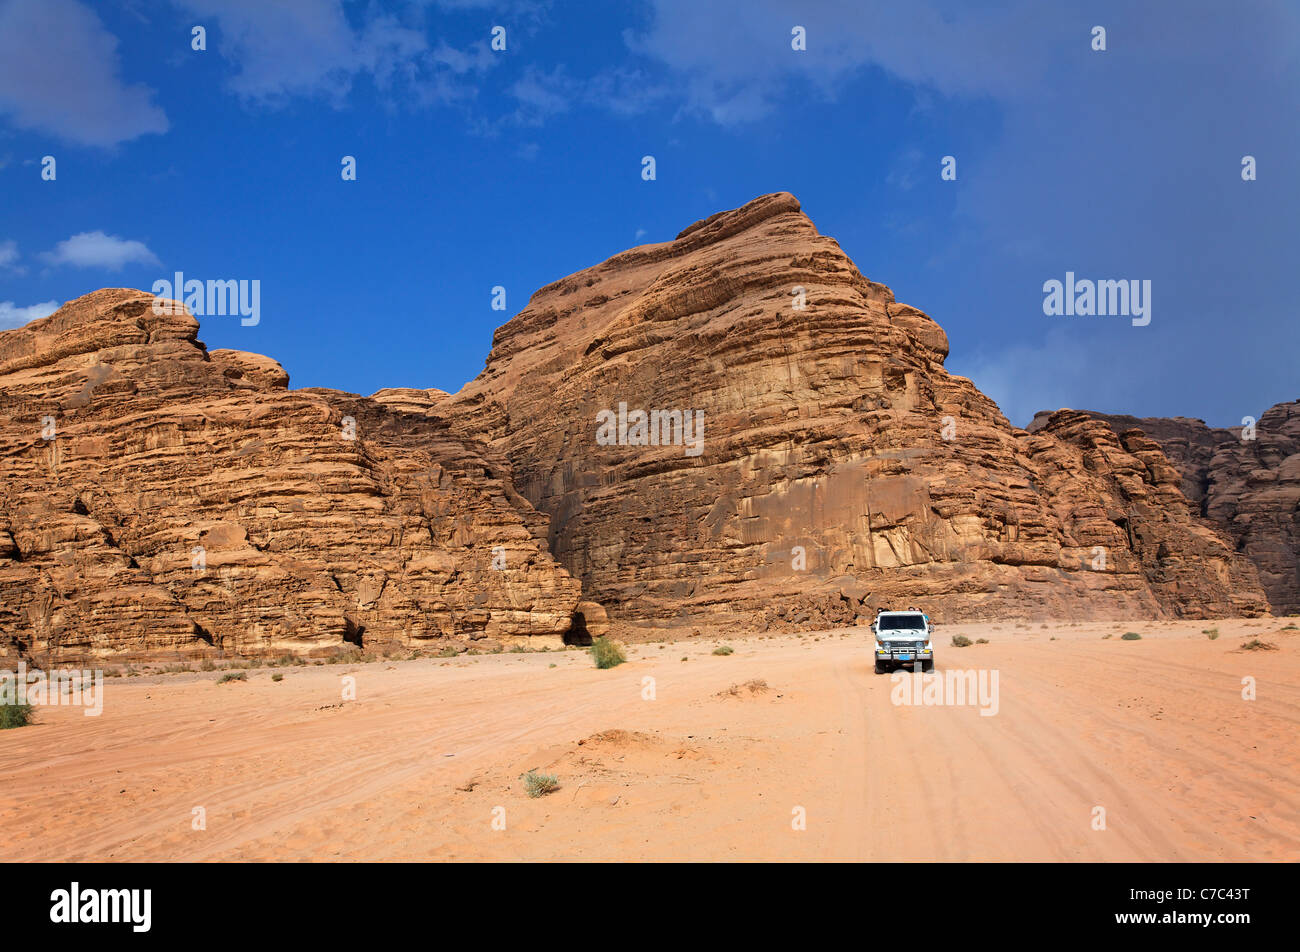 Desert safari dans les véhicules à quatre roues motrices à Wadi Rum, Jordanie Banque D'Images